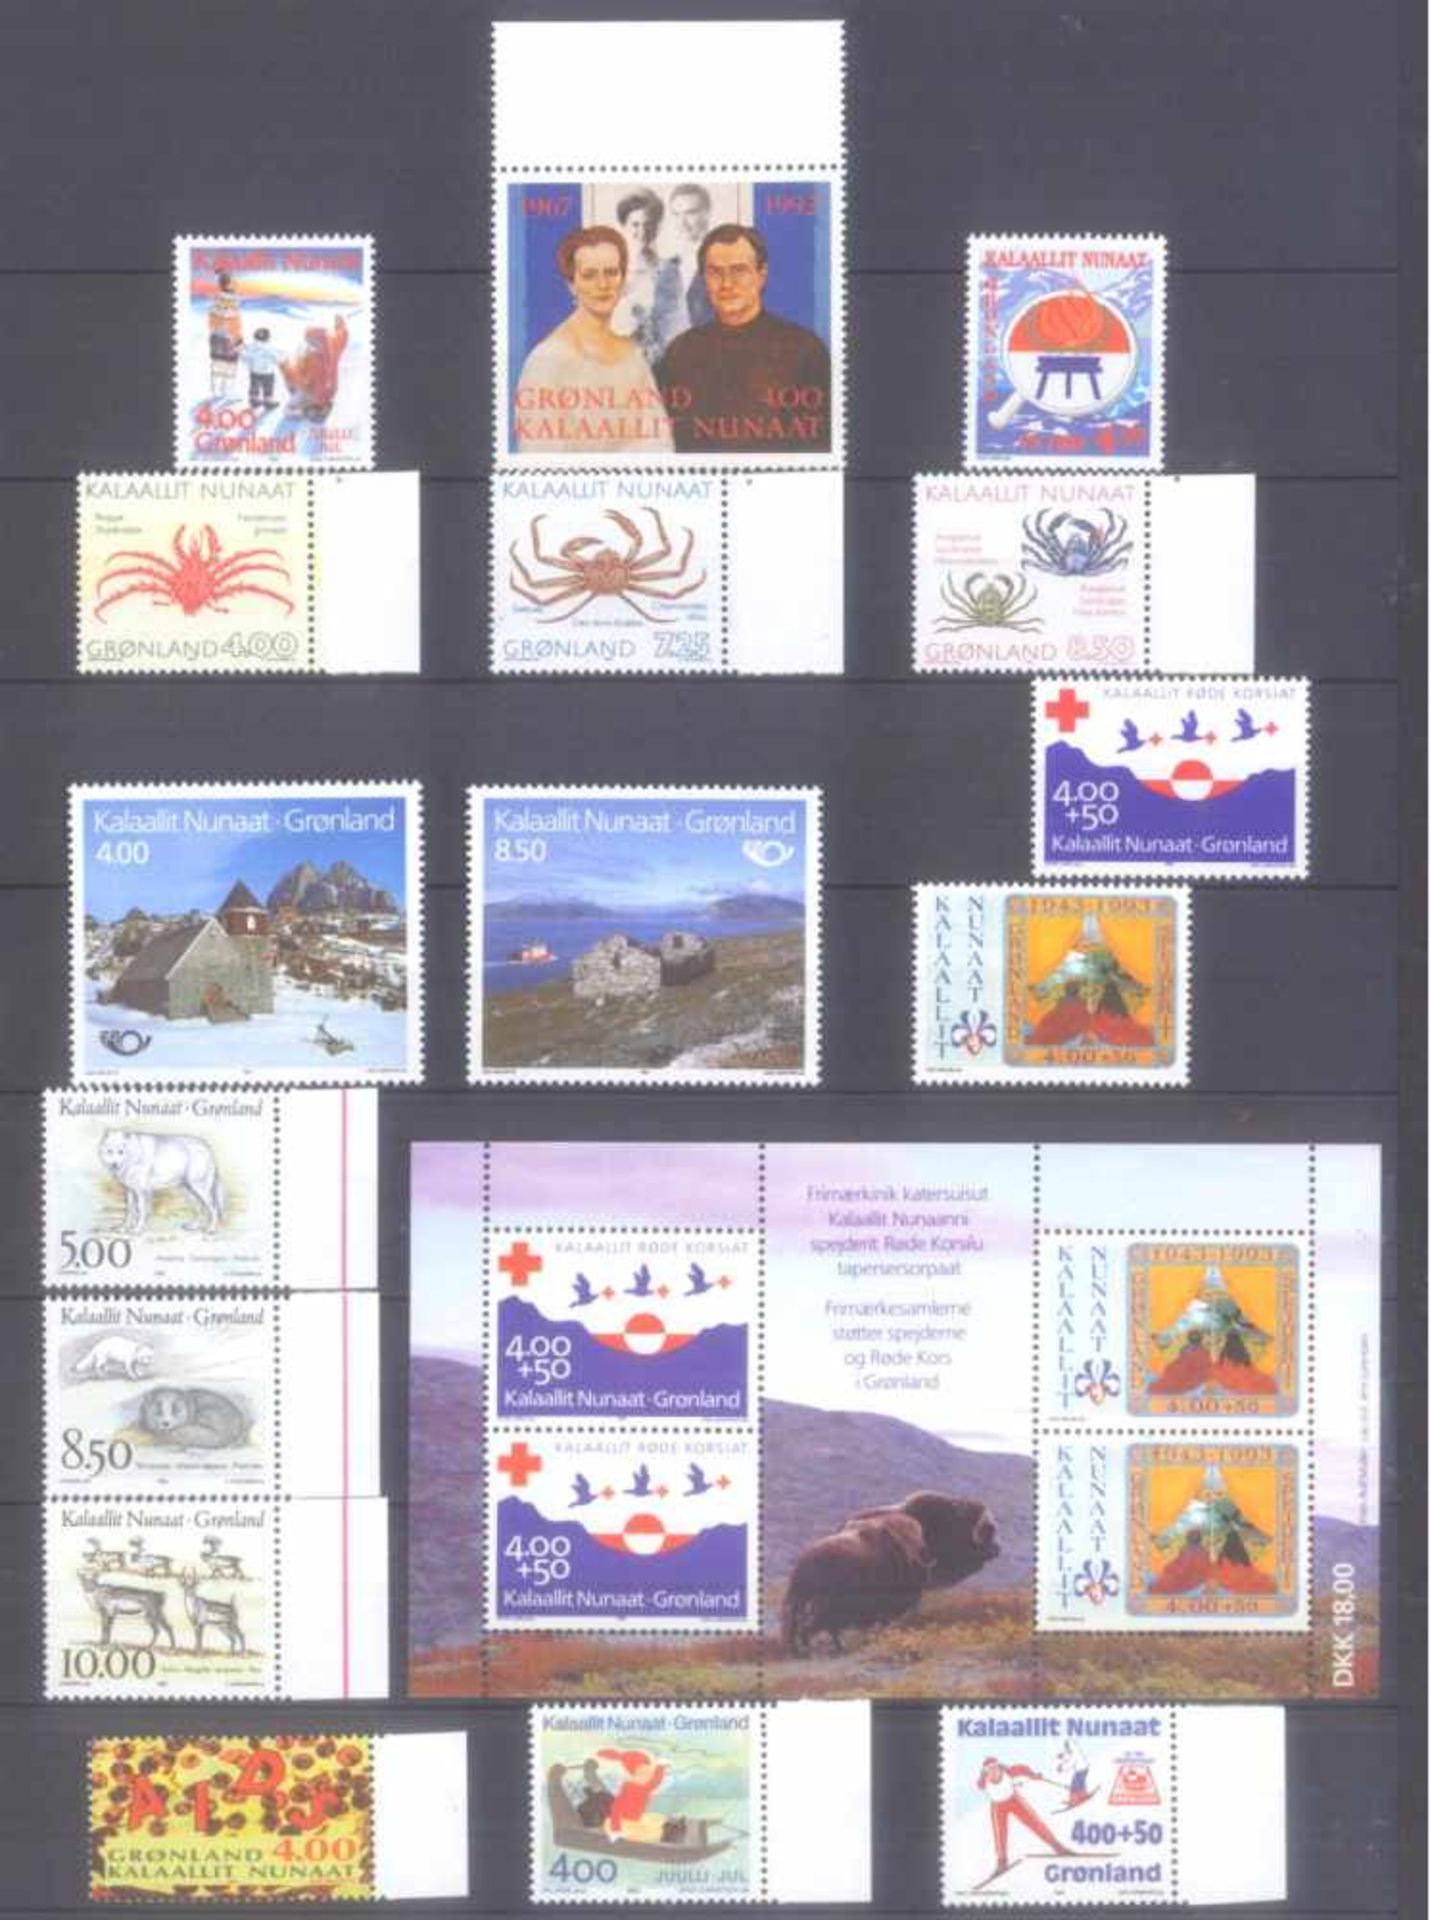 GRÖNLAND 1988-1995, Katalogwert fast 400,- Euro.komplette postfrische Sammlung auf Steckseiten, es - Image 3 of 5